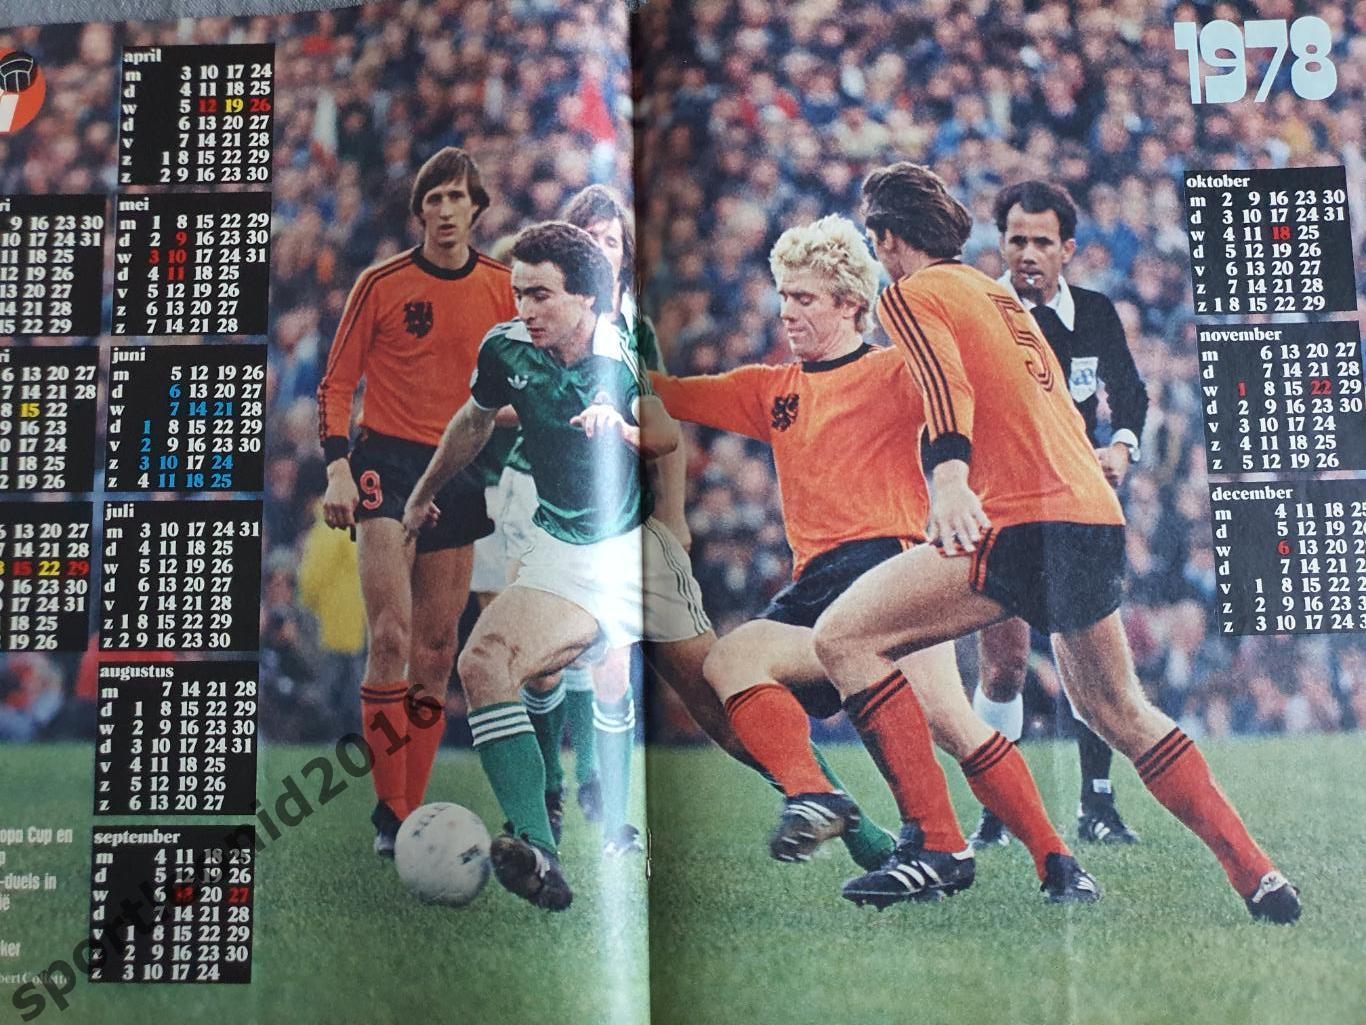 Voetbal International 1977 51 выпуск годовая подписка .1 1